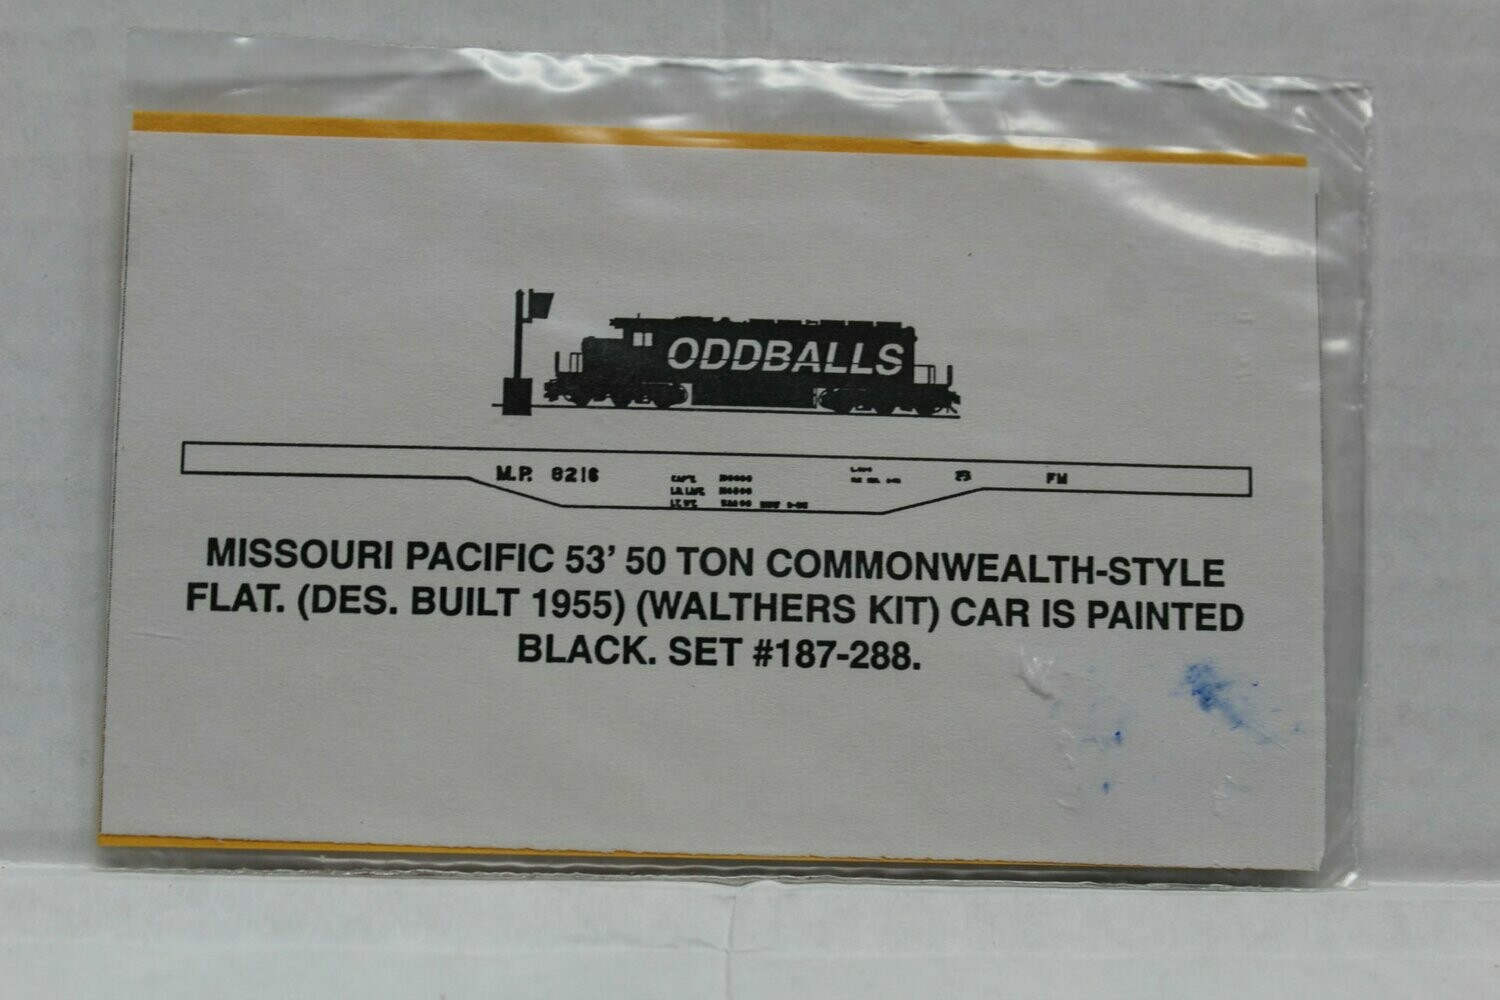 Missouri Pacific 53' 50 Ton Flat ODDBALL